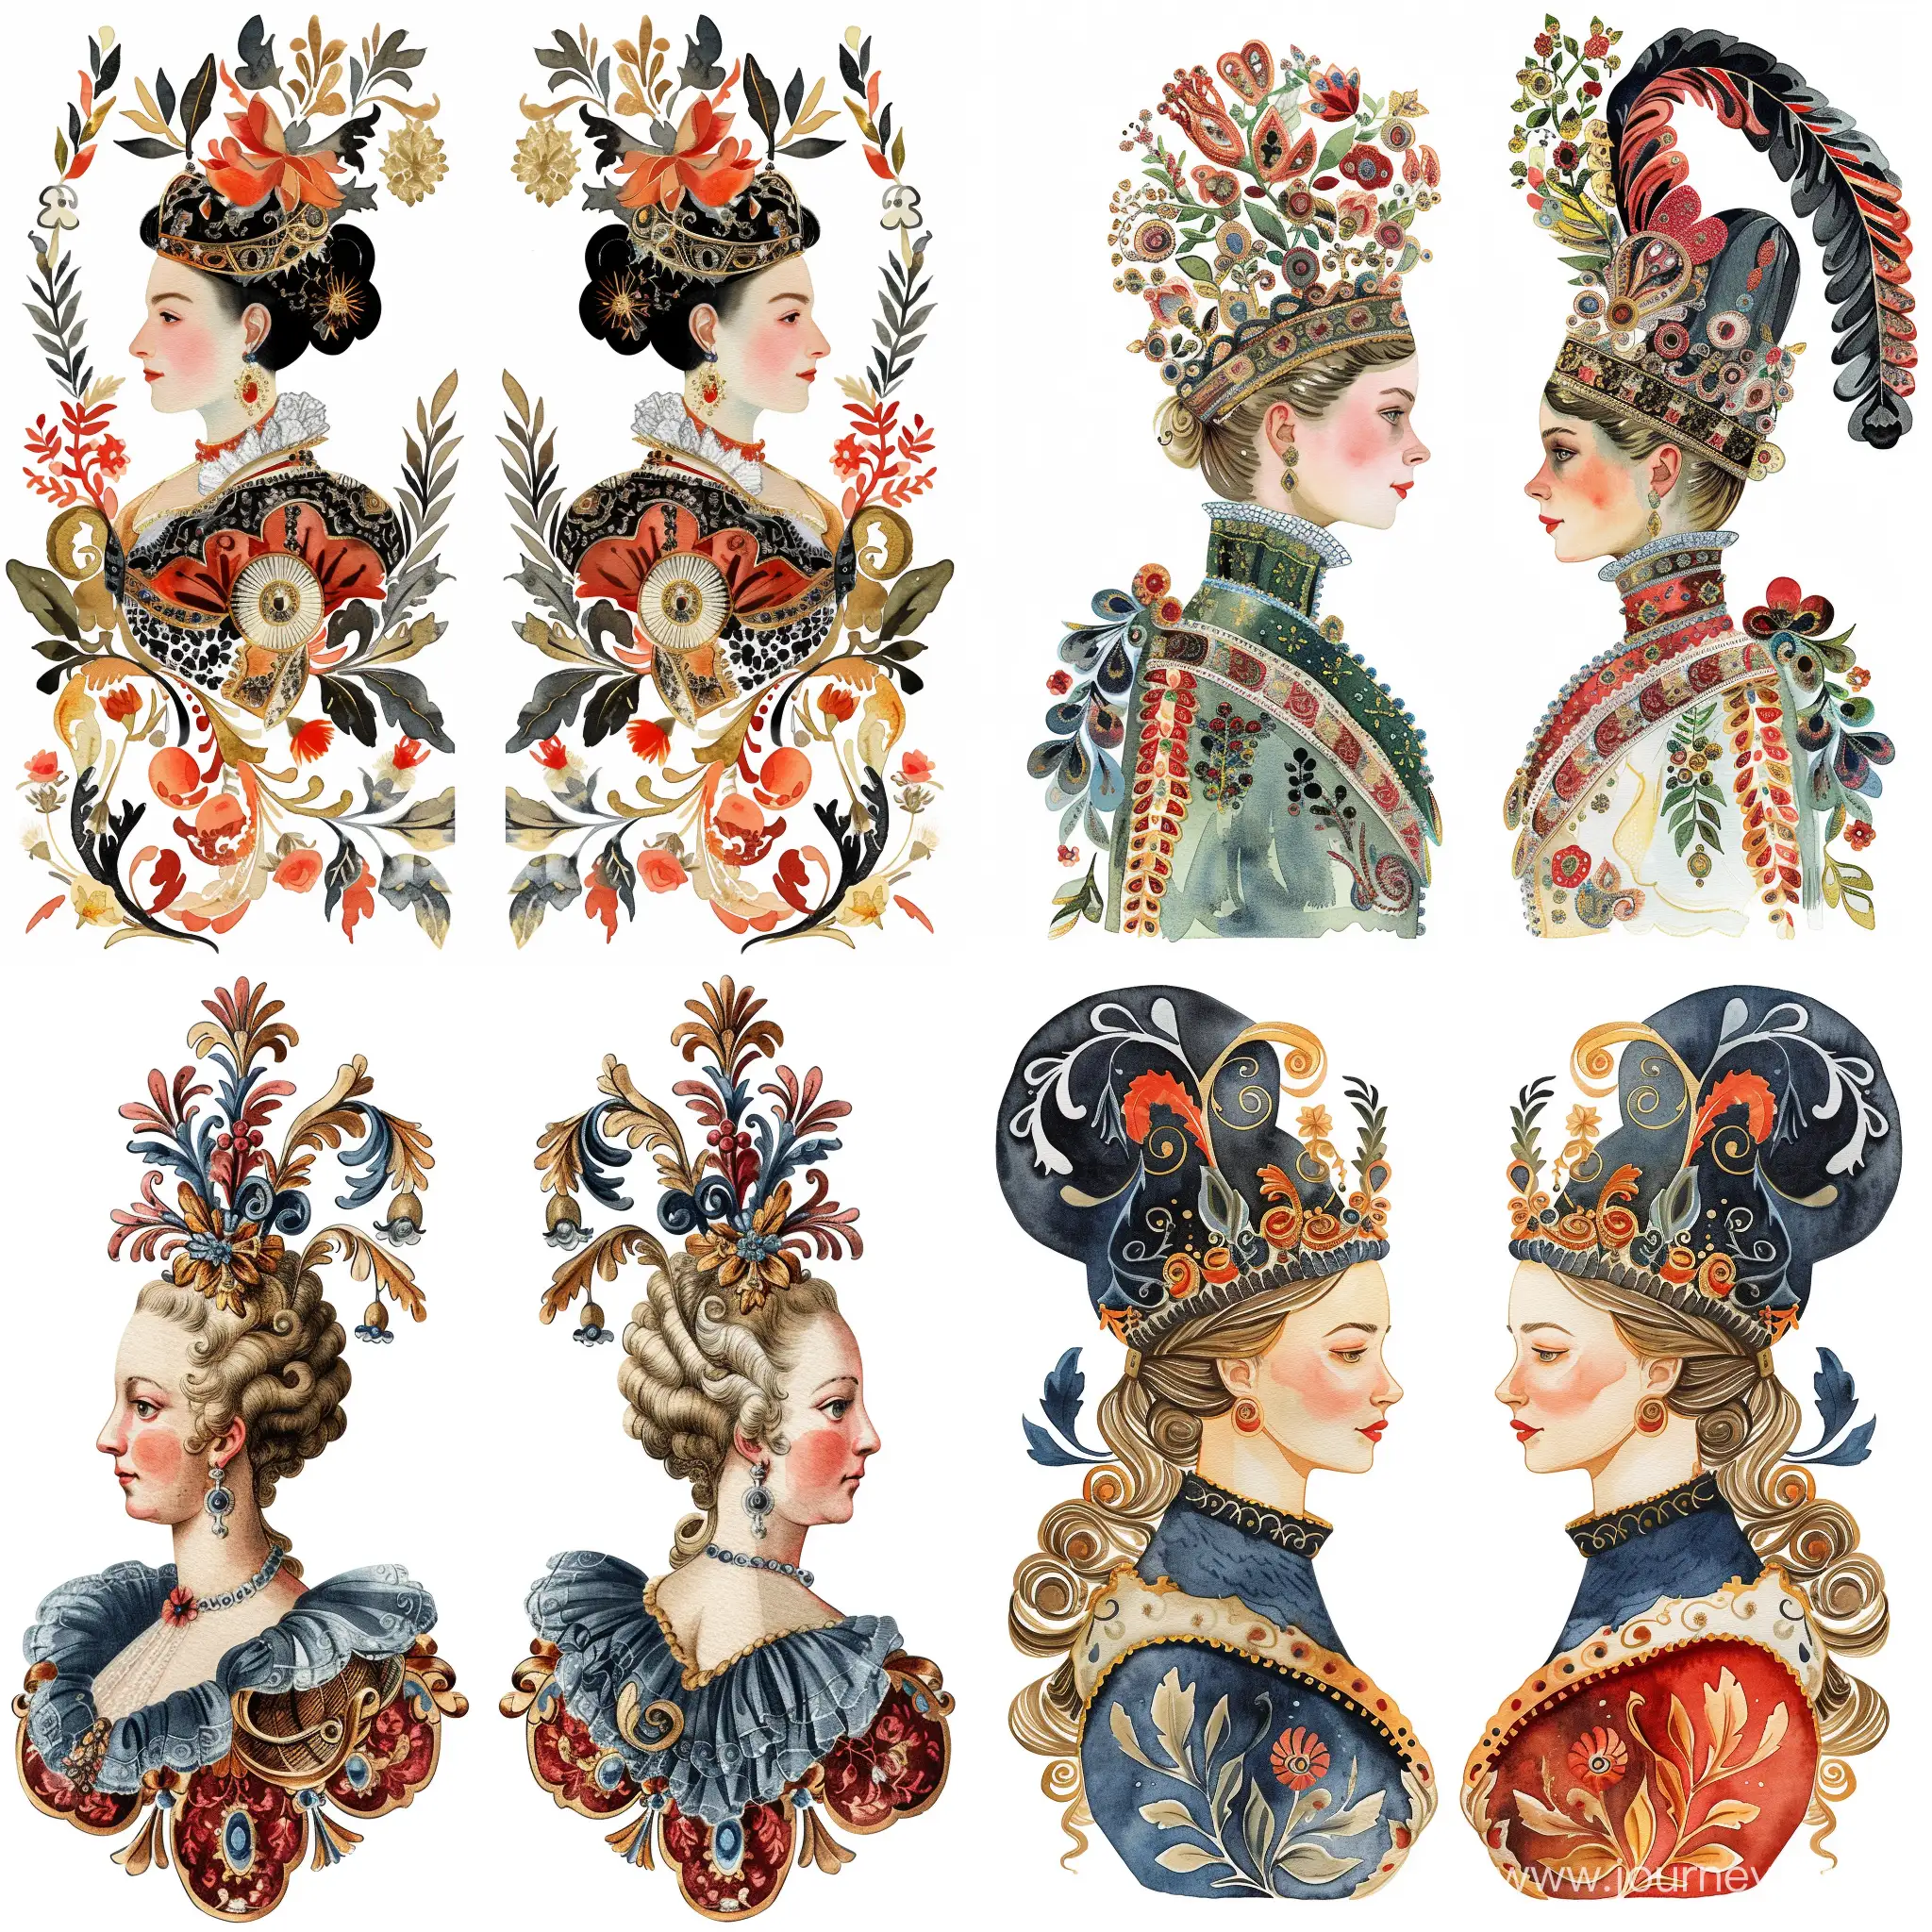 Austrian-Queen-Ornament-Variants-Reflective-Watercolor-Illustrations